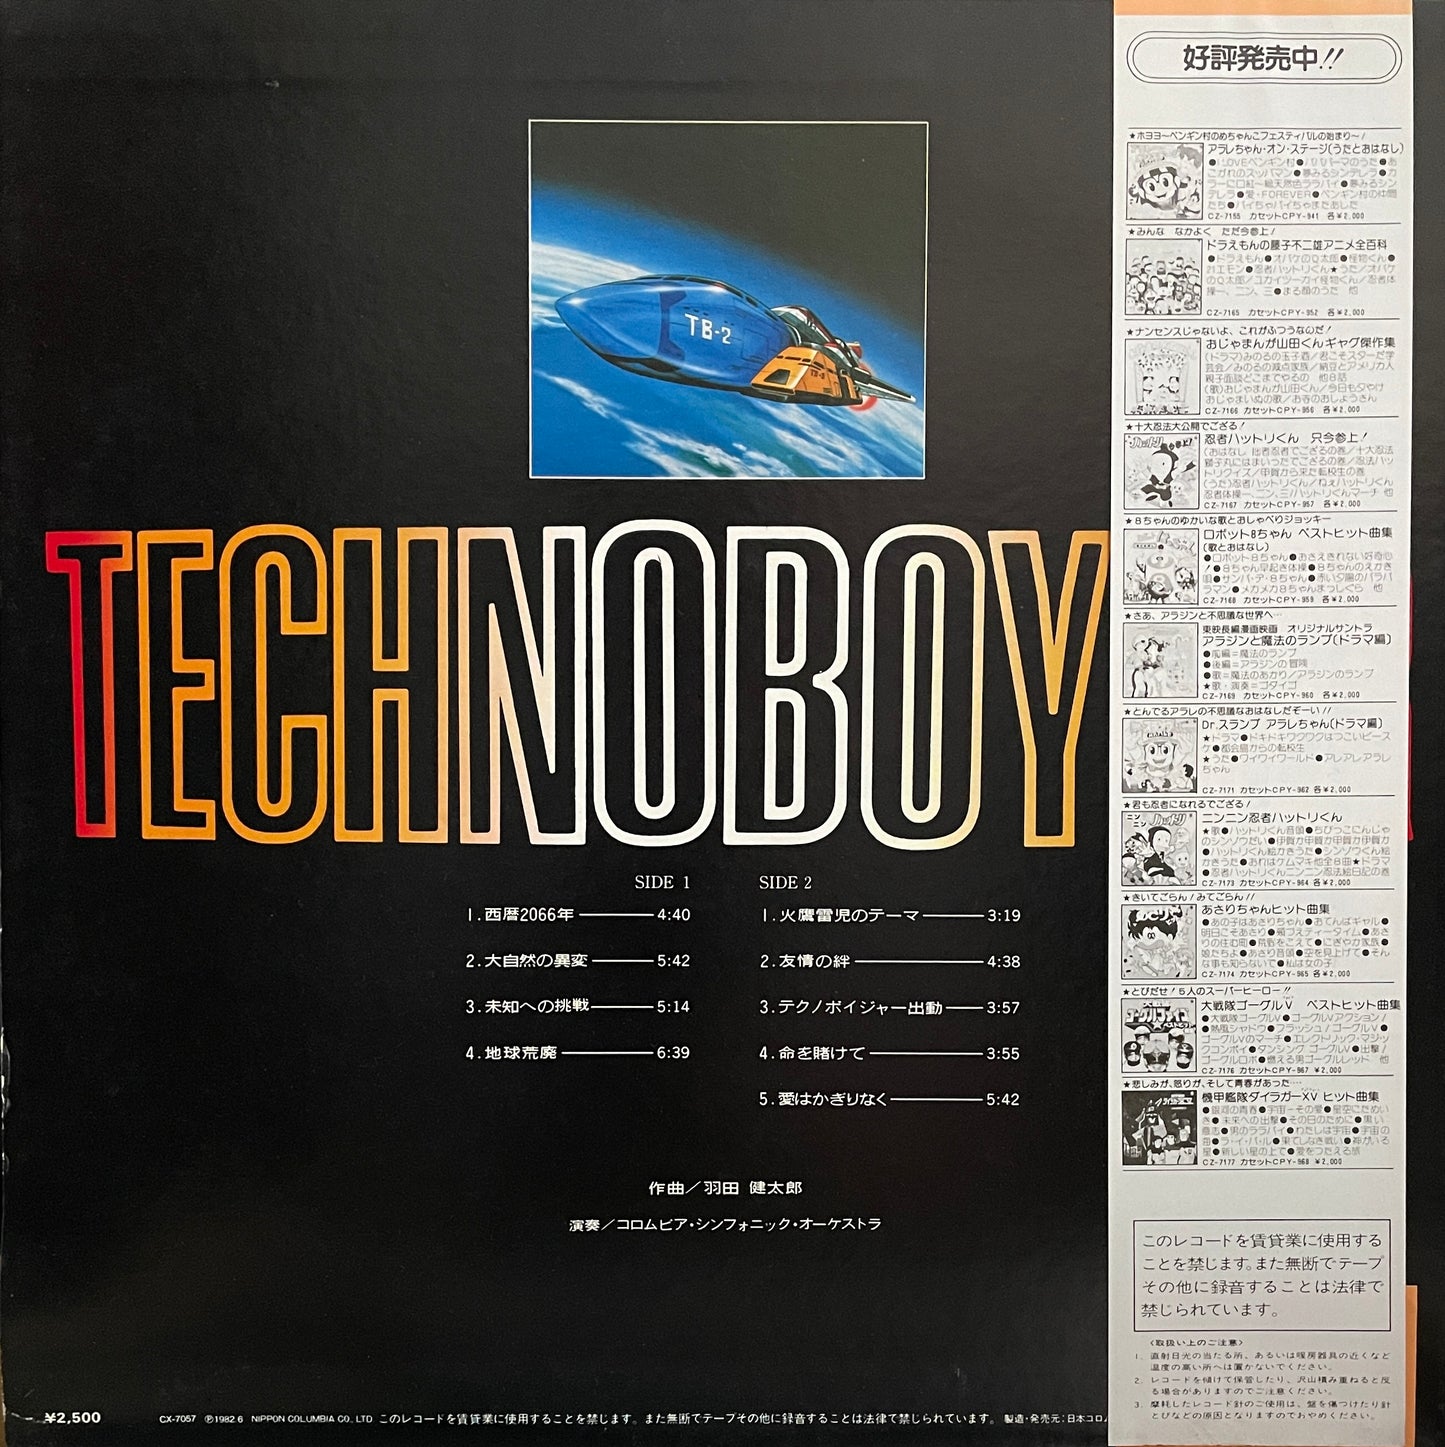 Kentaro Haneda "Technoboyger" (1982)